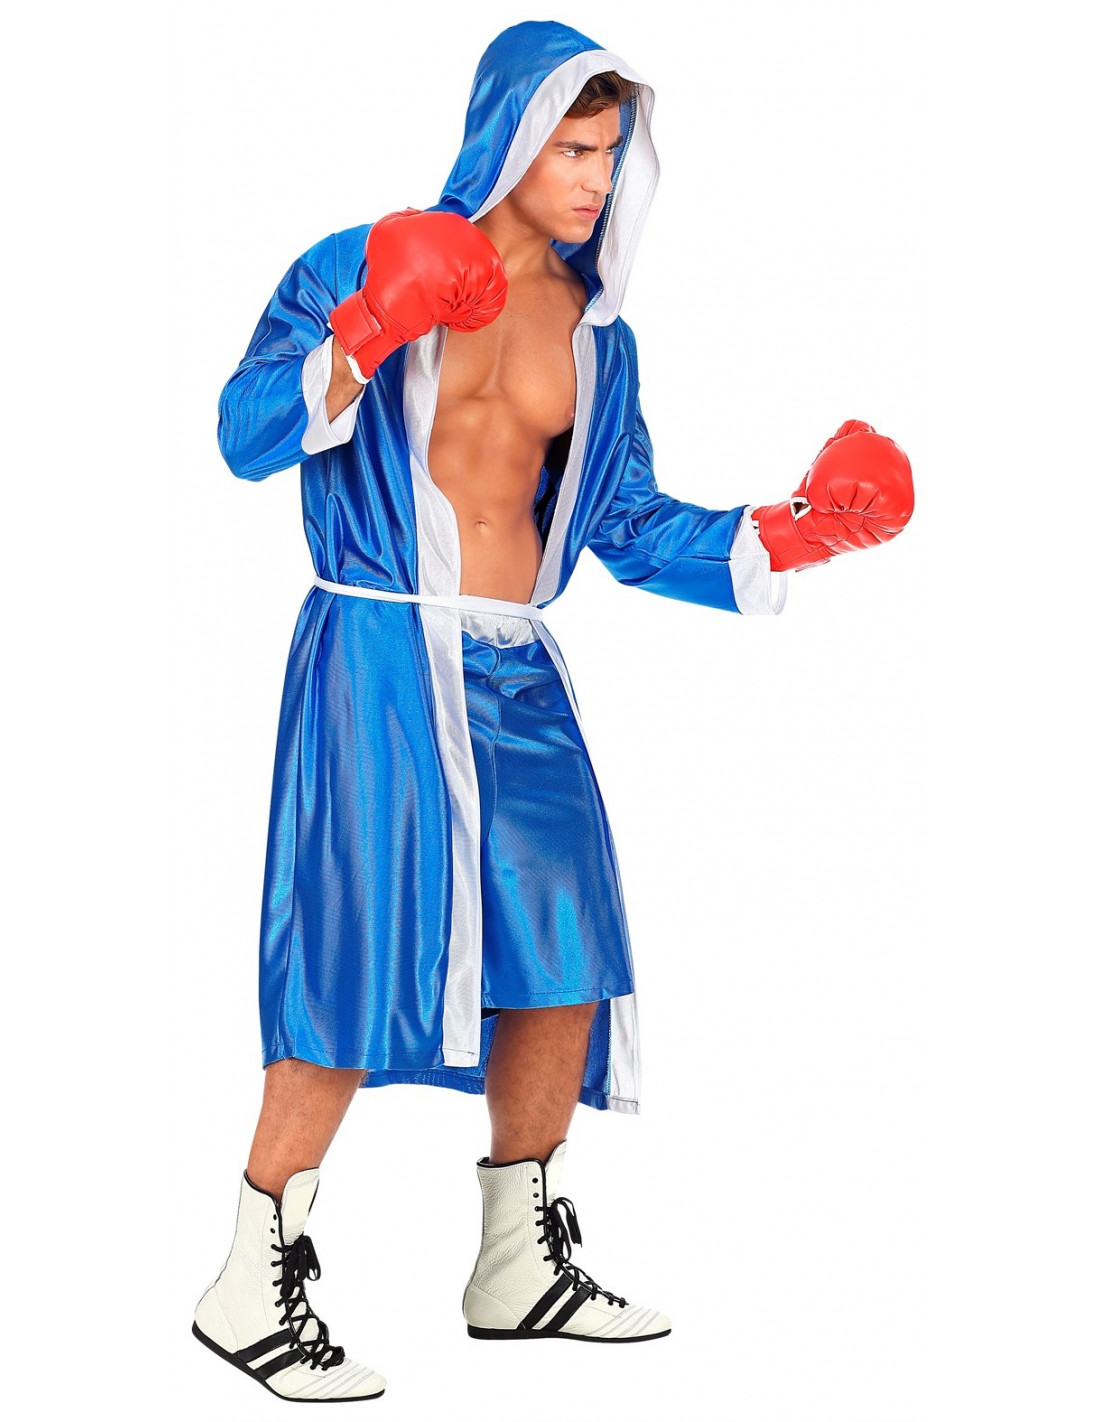 01855-disfraz-boxeador-azul-hombre - Martinfloressl